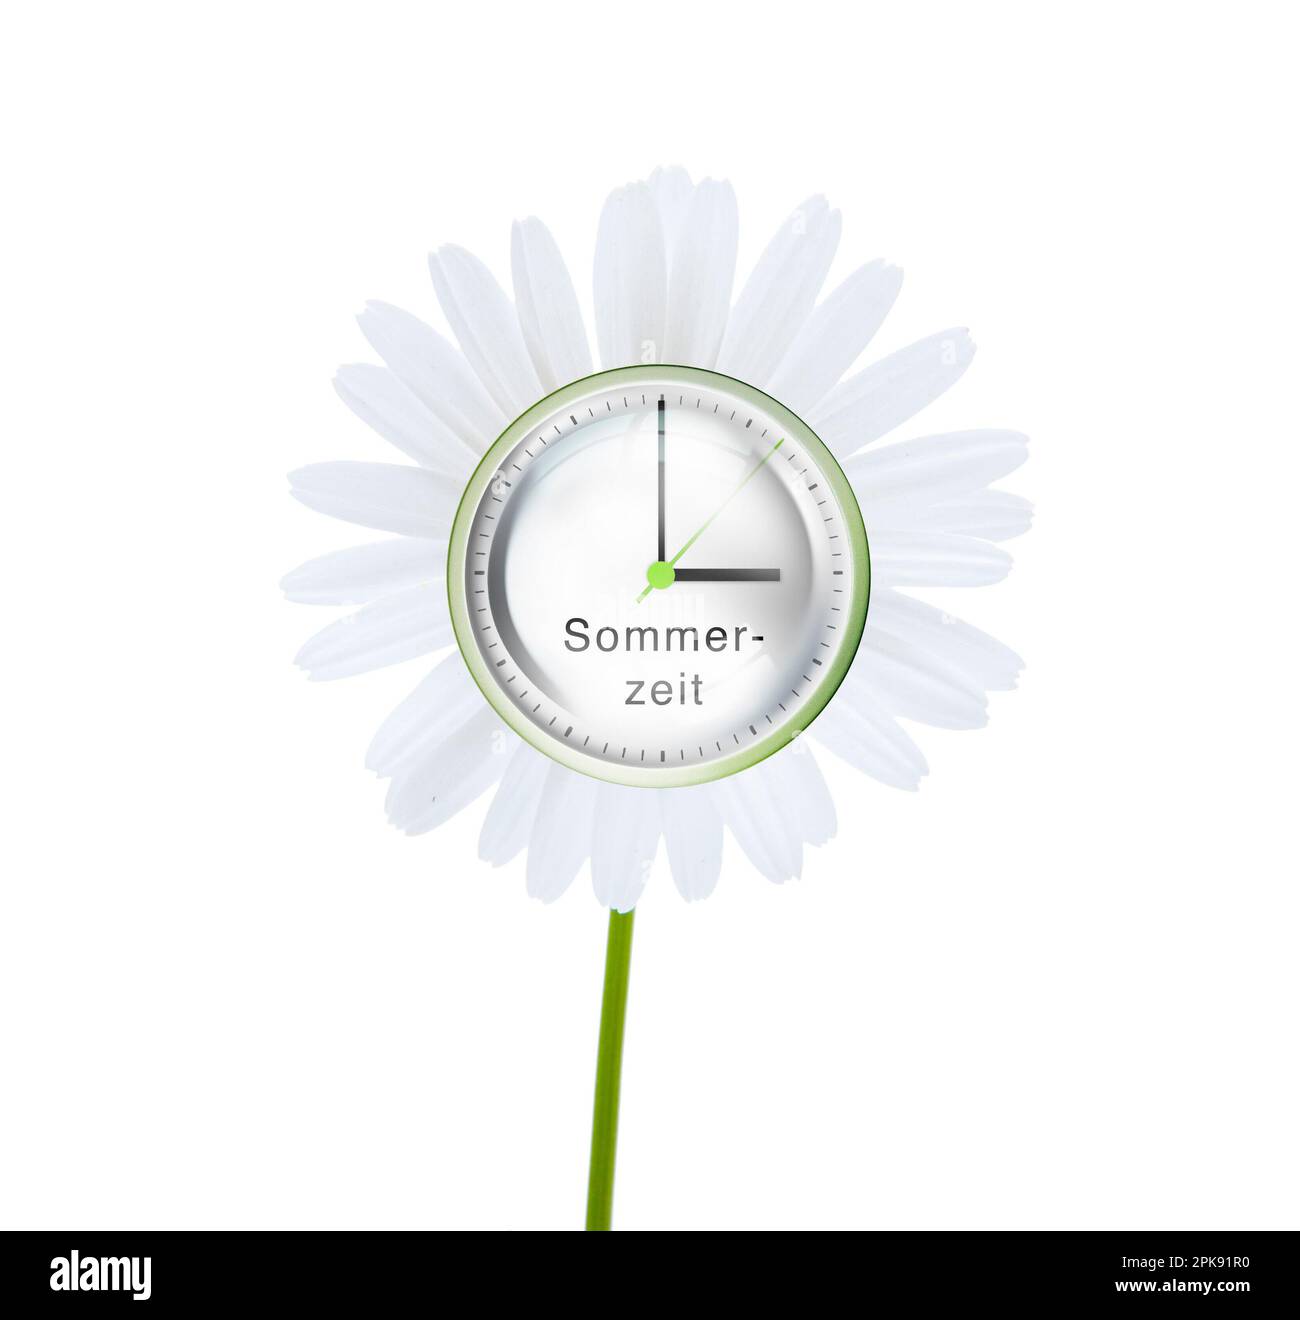 Uhr, das Drehrad zeigt drei Uhr an, Symbol für die Zeitumstellung auf Sommerzeit [M]. Stockfoto